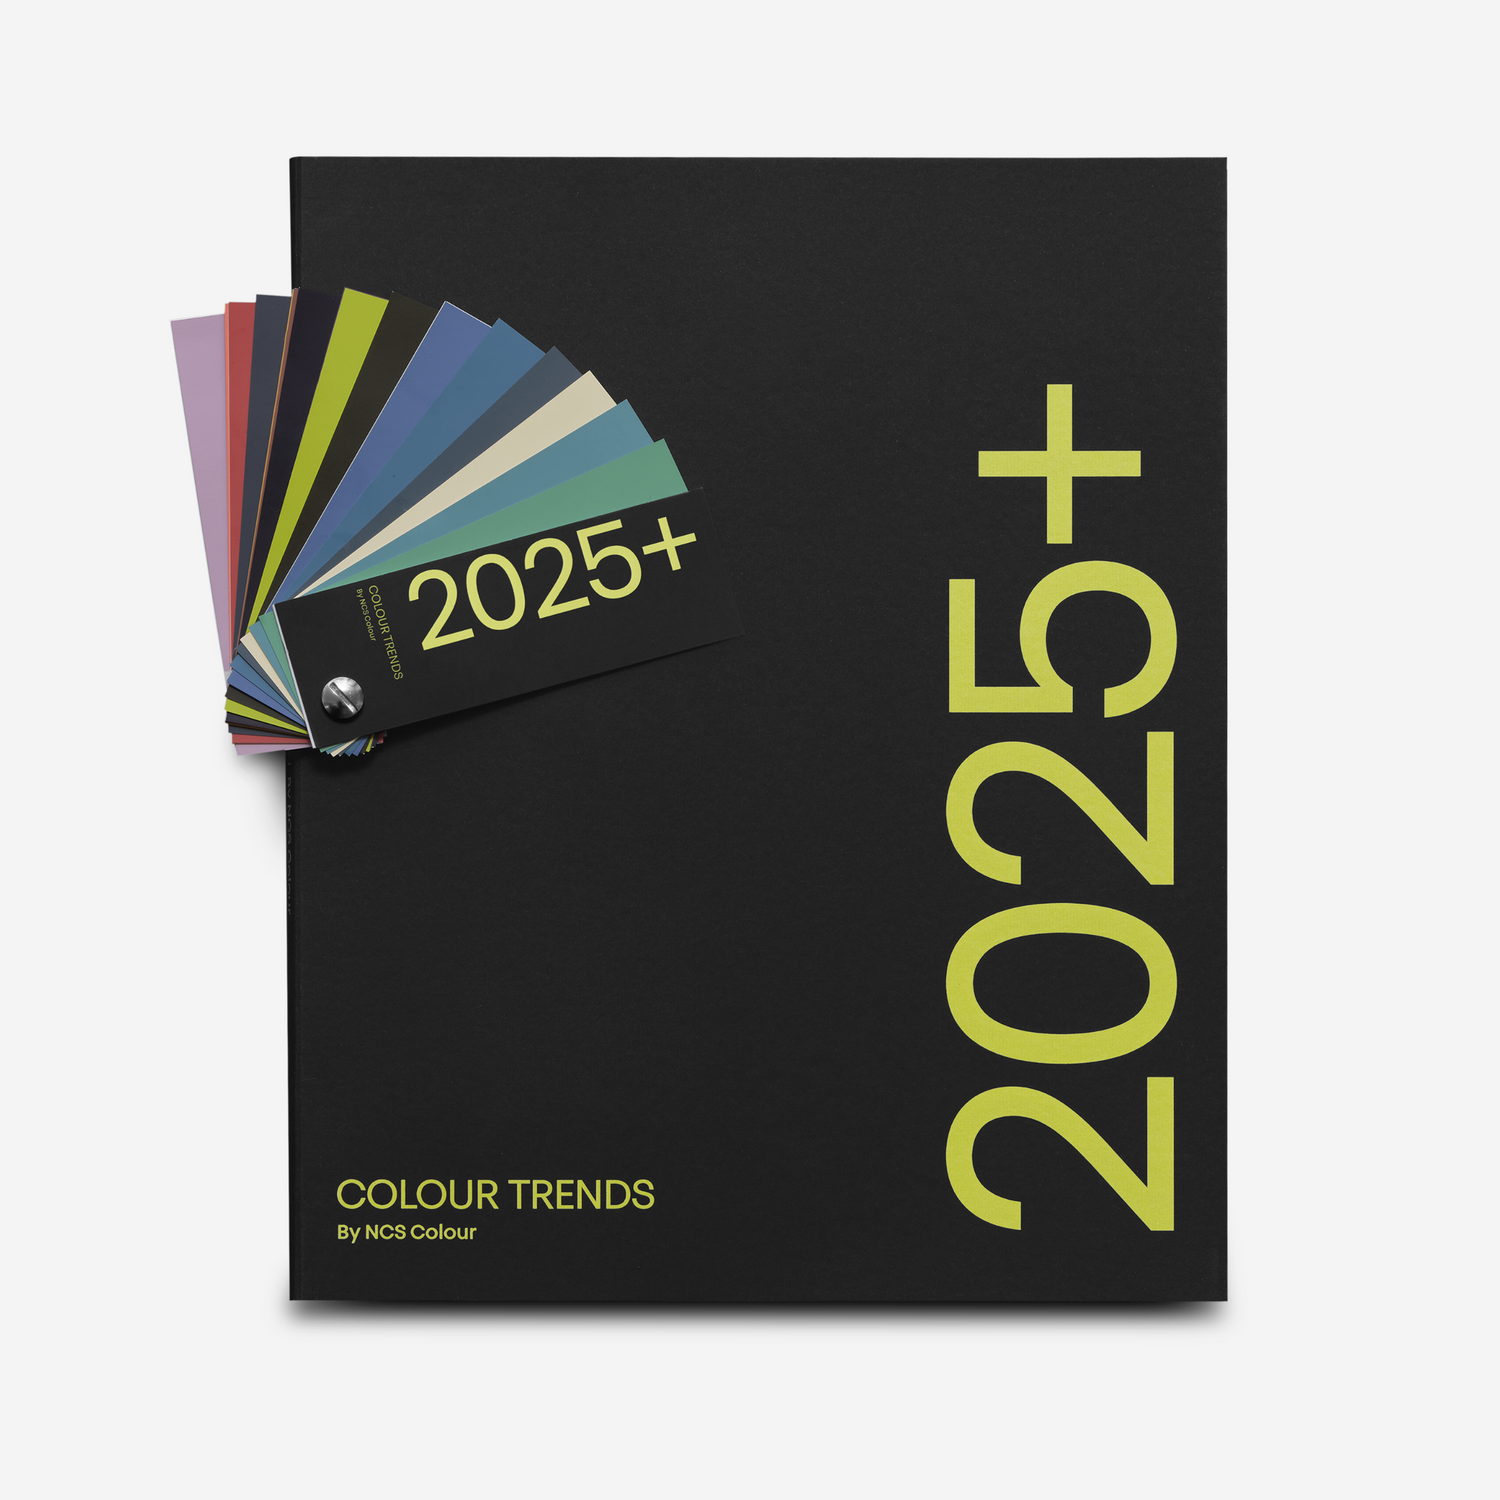 NCS Colour Trends 2025+ Magazine